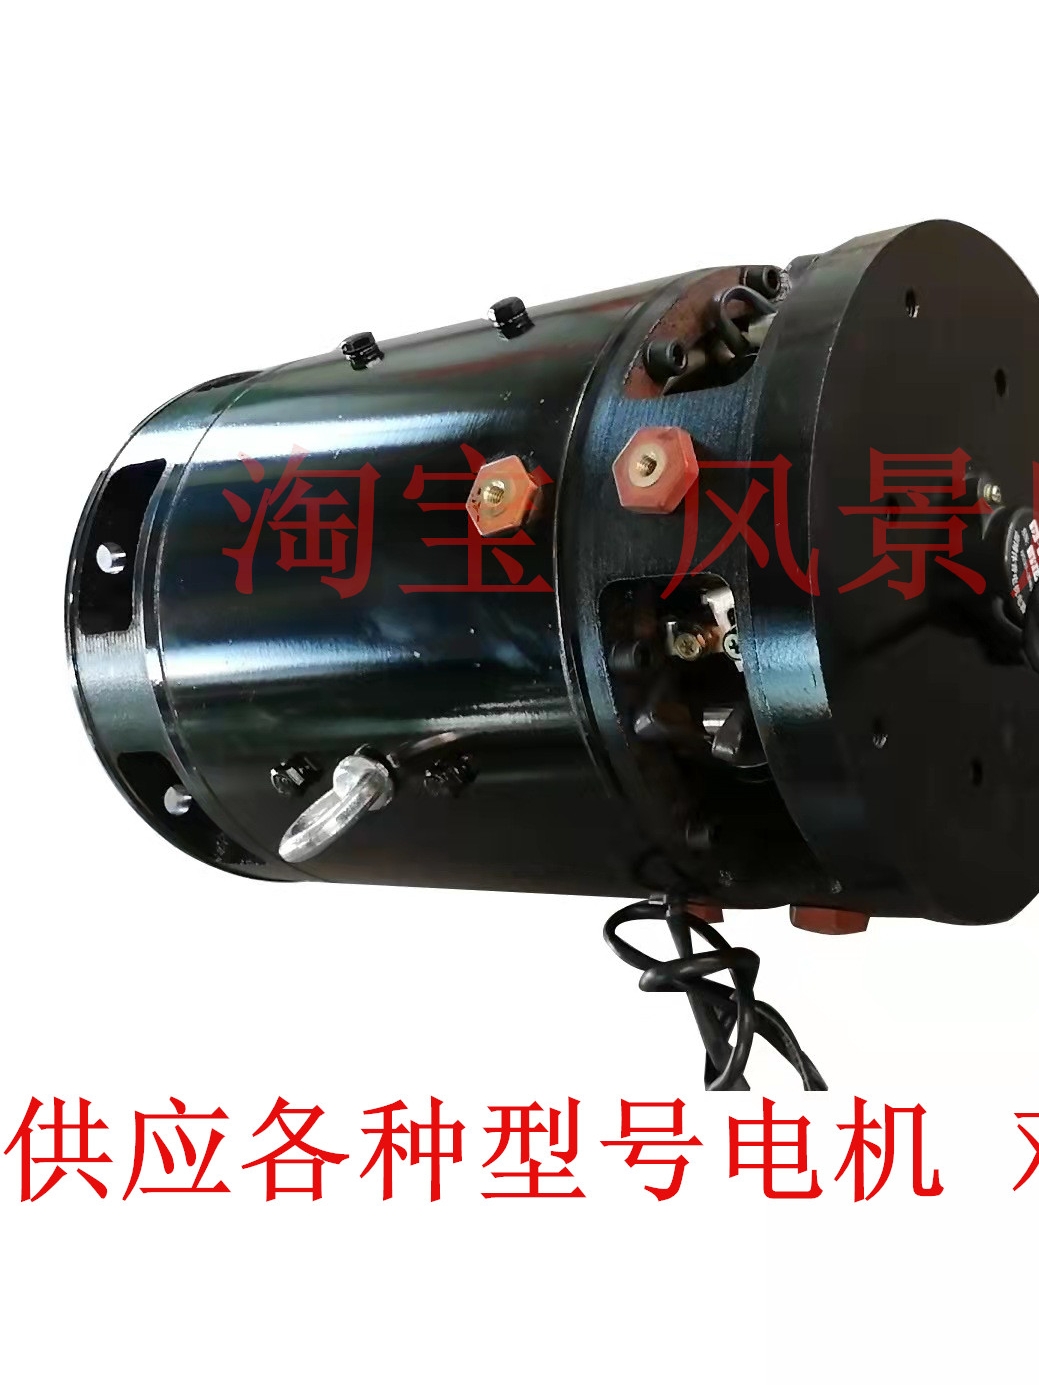 JXQ132-15蓄电池车辆用三相交流电动机 WXDJ安徽皖南新维电机马达